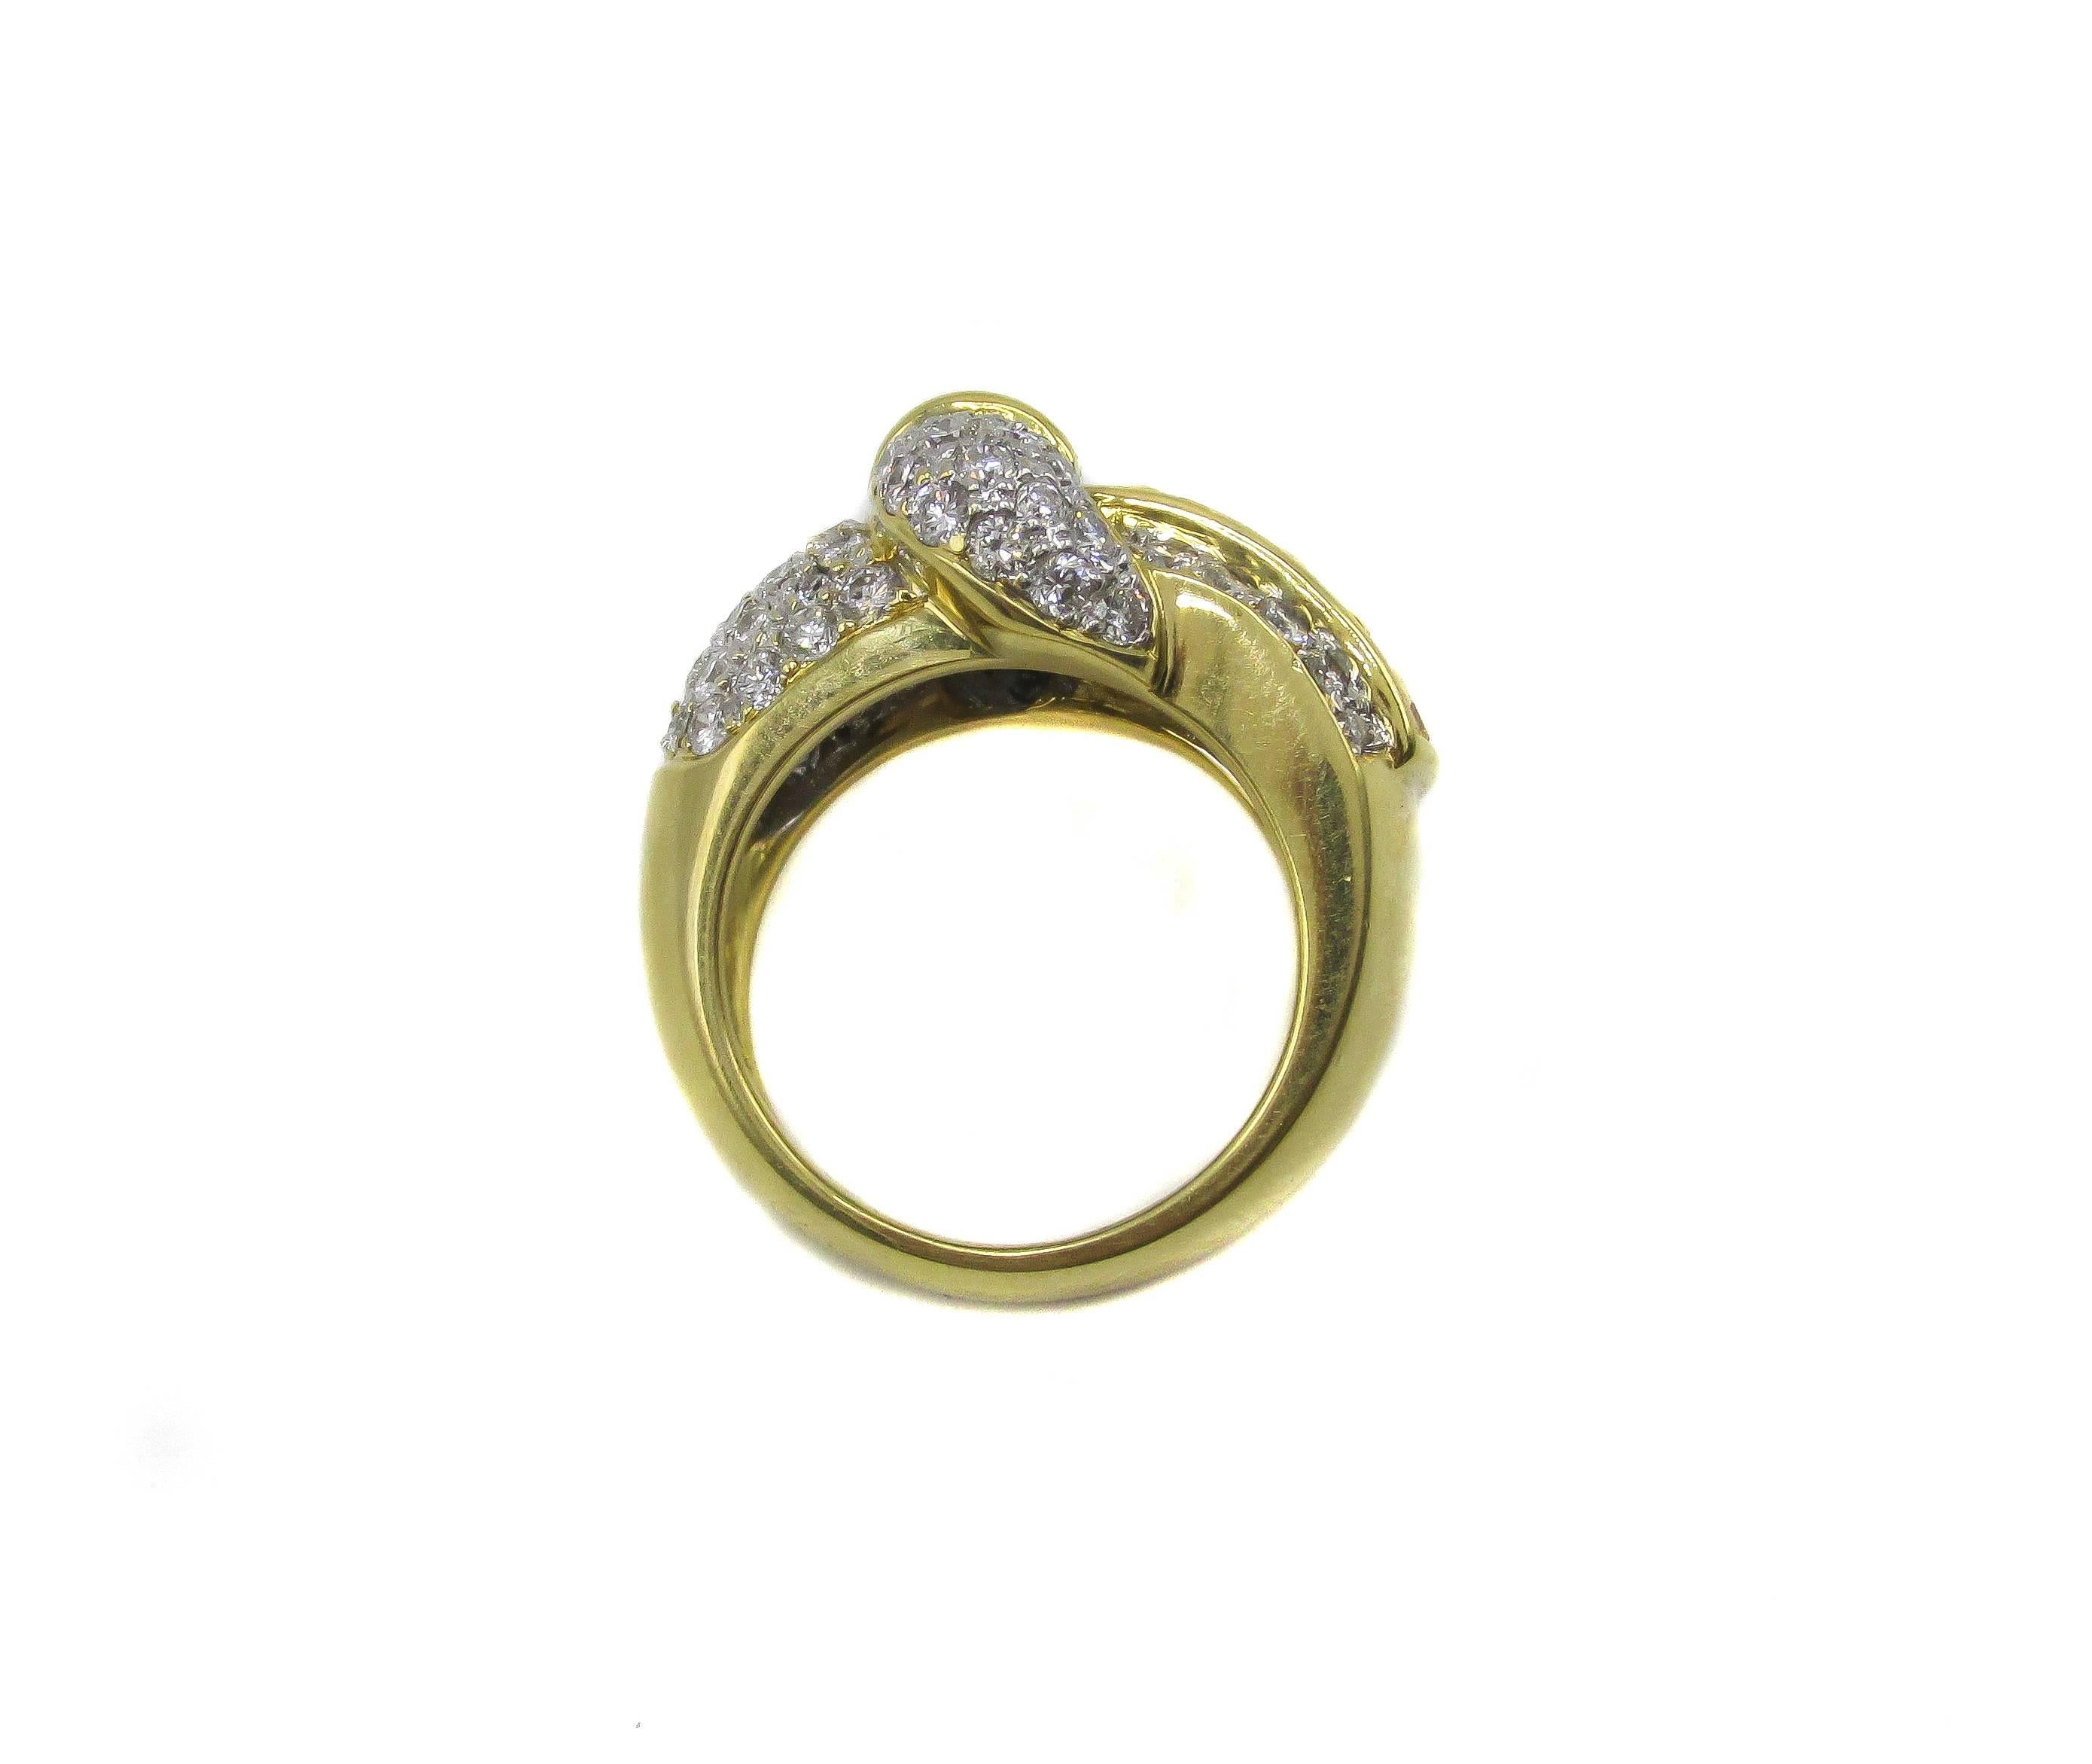 Wunderschöner Ring aus 18 Karat Gelbgold mit Diamanten und gelben Saphiren in Form einer Gürtelschnalle. Dieser wundervoll gearbeitete Ring ist mit 79 runden Diamanten im Brillantschliff und 4 Diamanten im Baguetteschliff in Rillen gefasst. 18